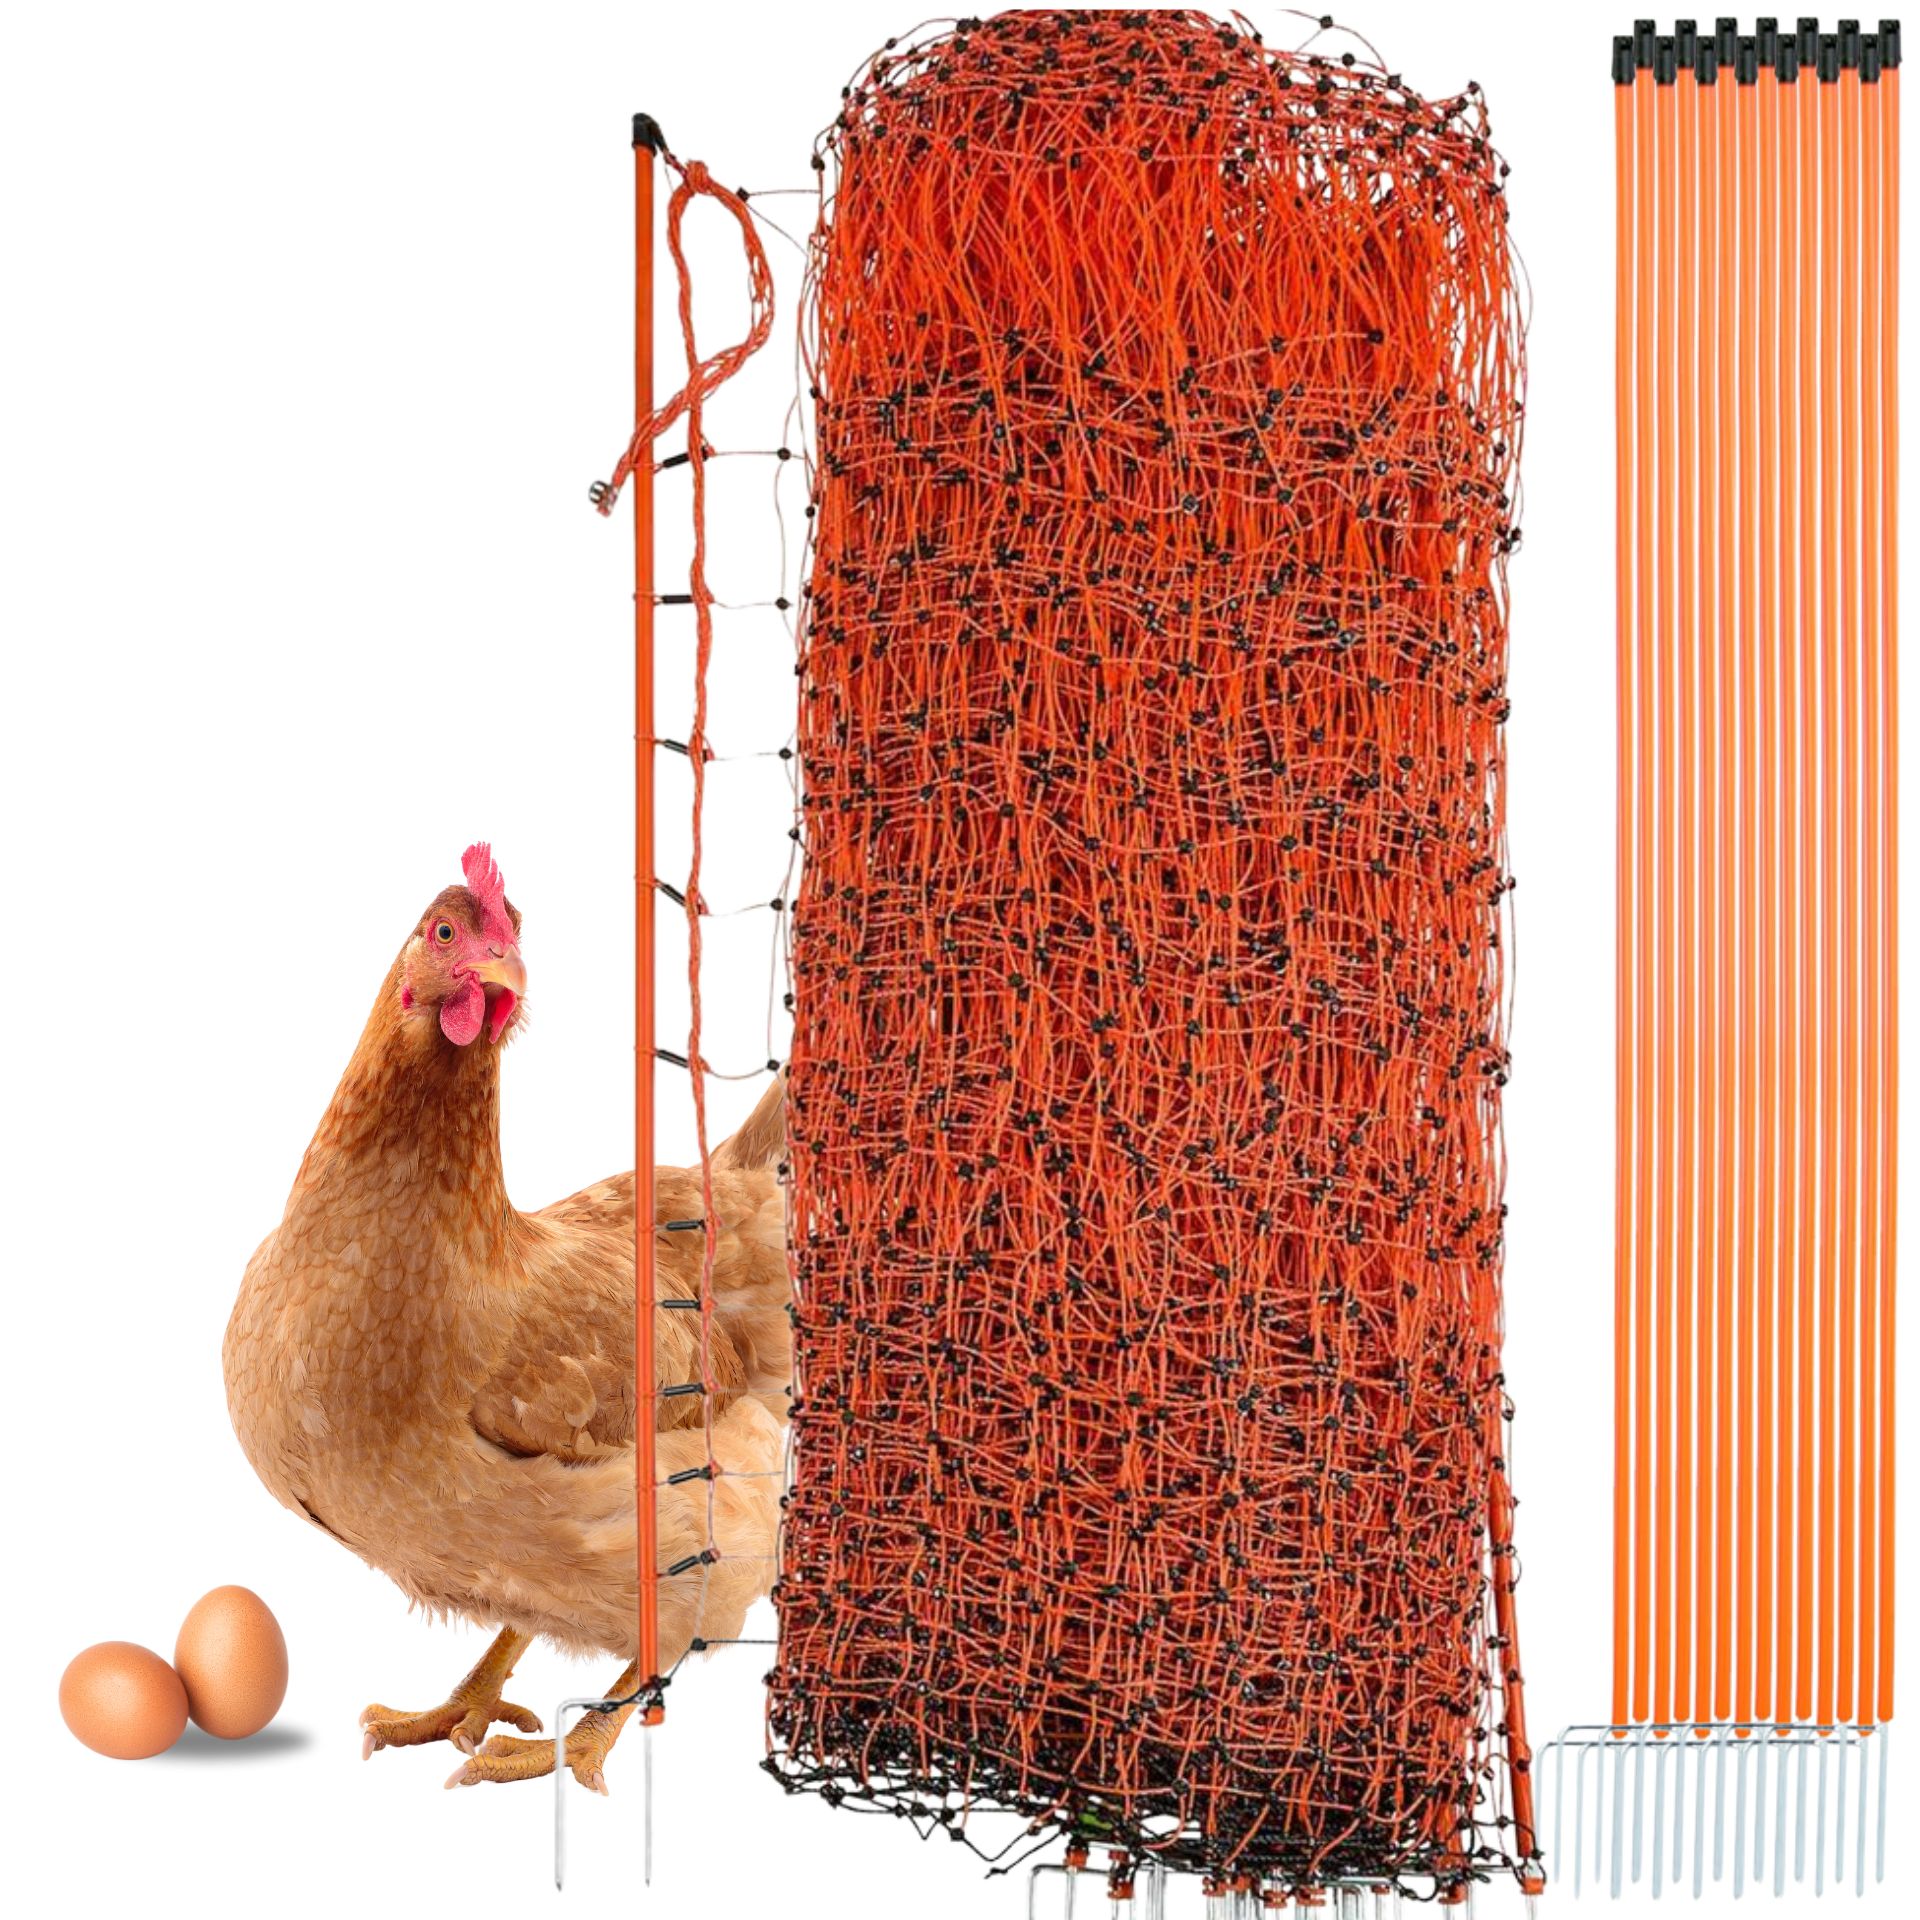 Agrarzone csirkeháló Classic villamosítható, dupla csúccsal, narancssárga színben 25 m x 112 cm